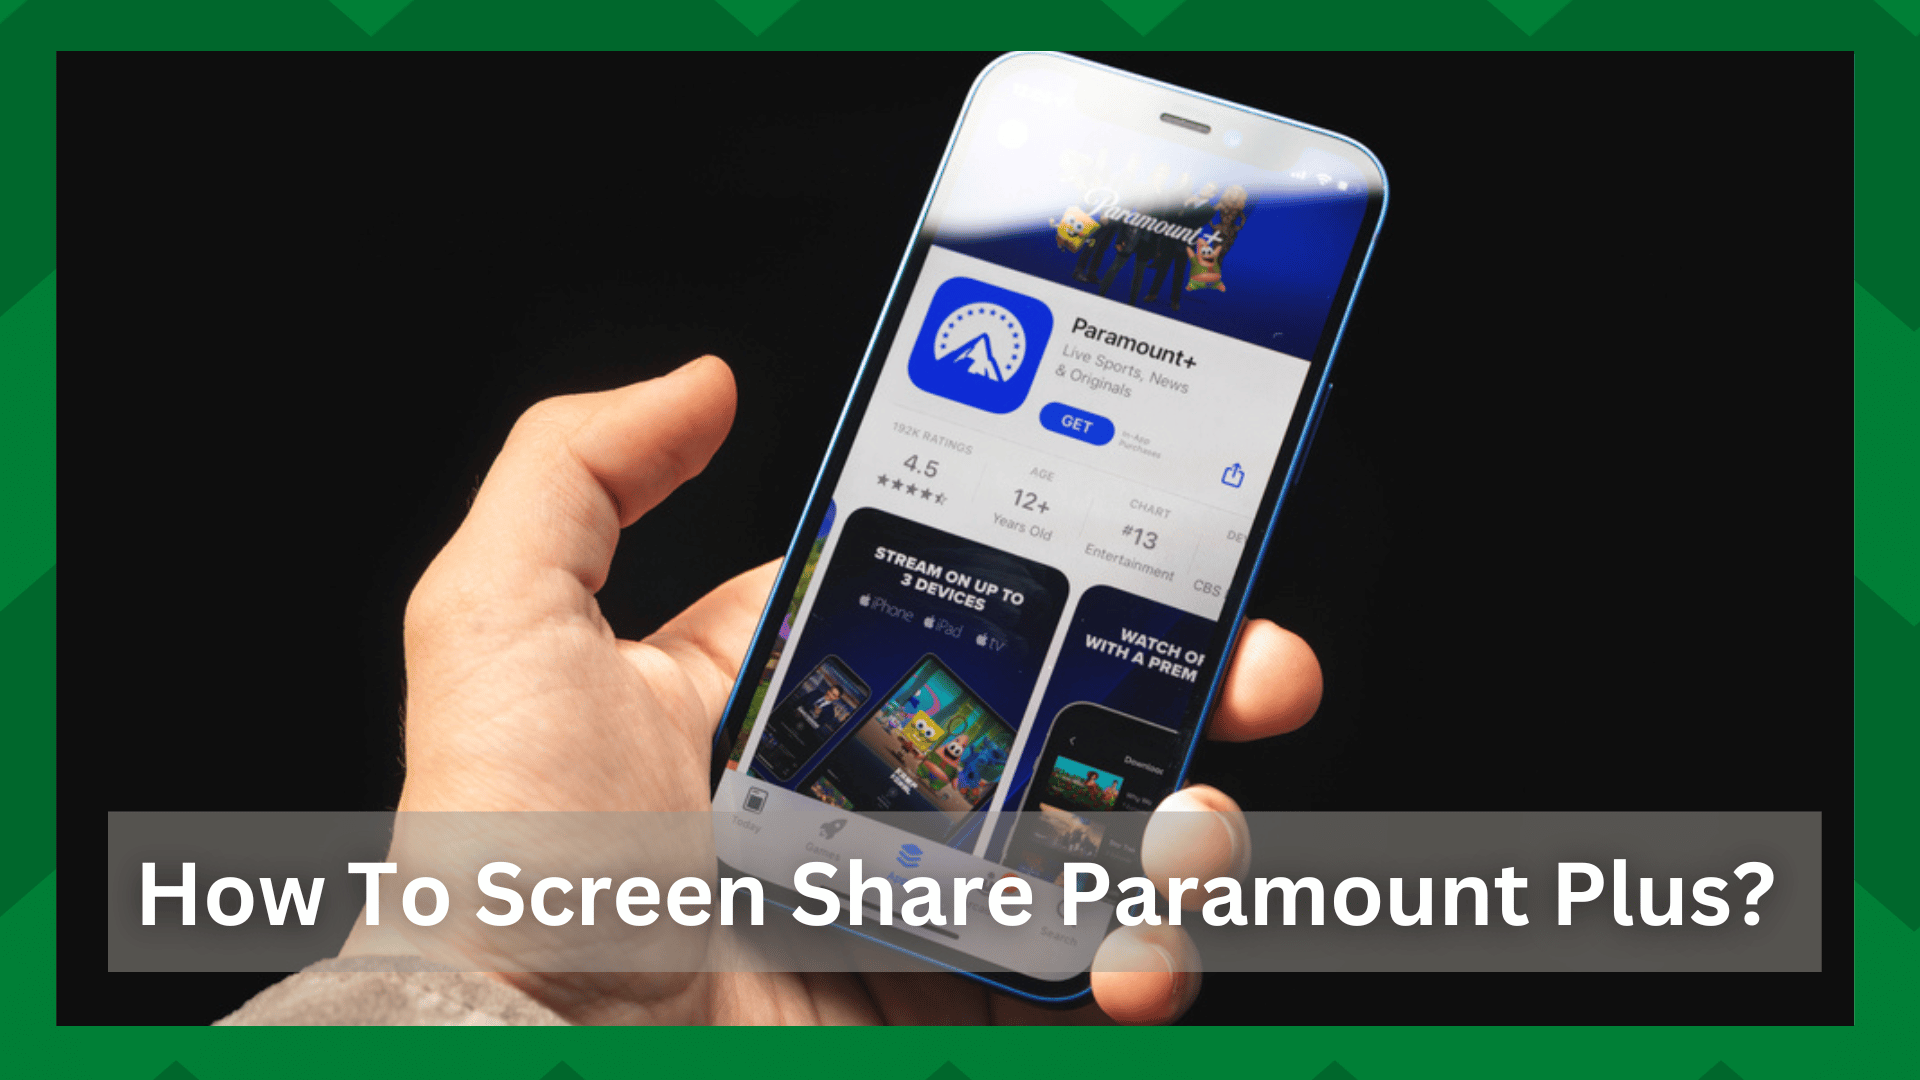 Hoe kan ik Paramount Plus delen? (Samen Prijs, Apple SharePlay, Screencast, Zoom)